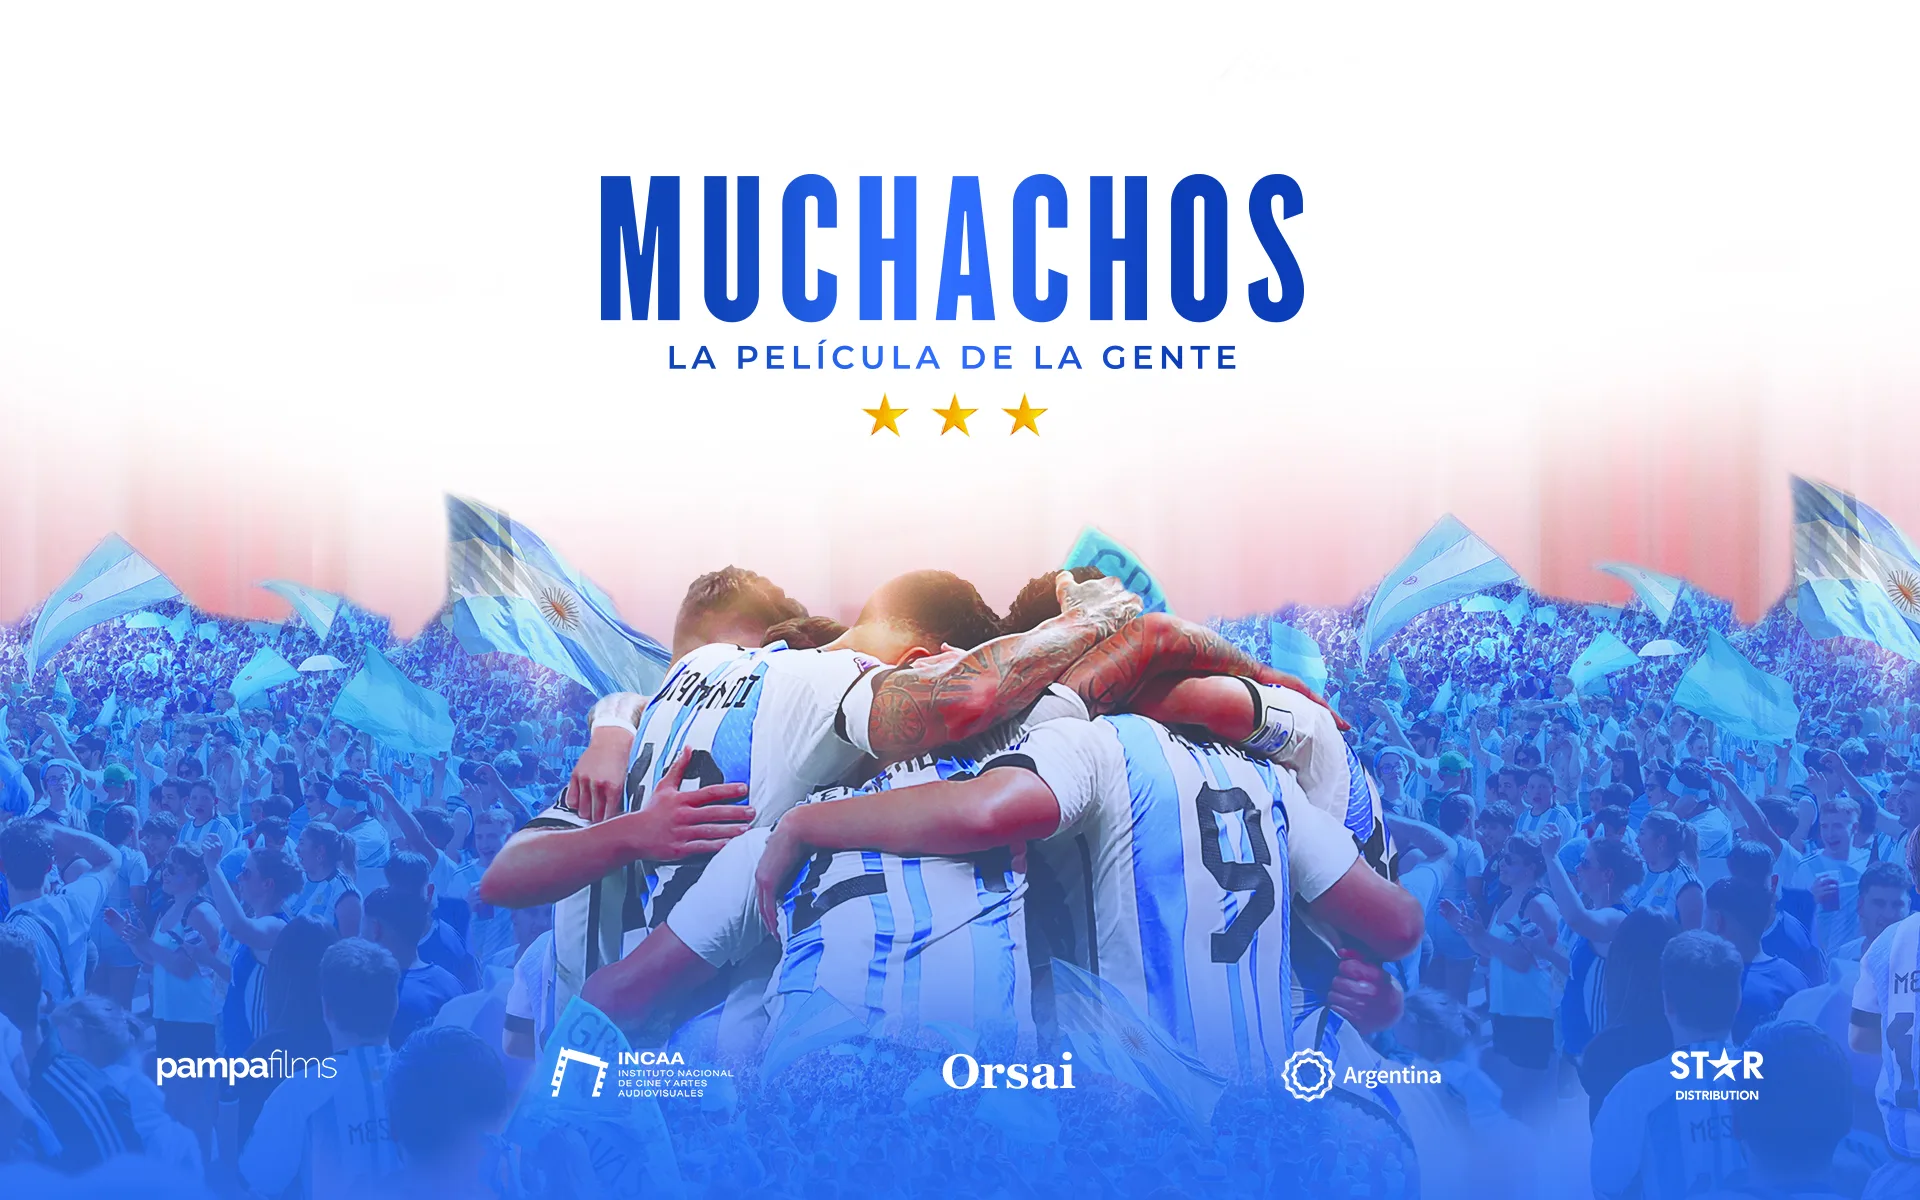 Llega a los cines "Muchachos", la película sobre Selección de fútbol de Argentina en Qatar